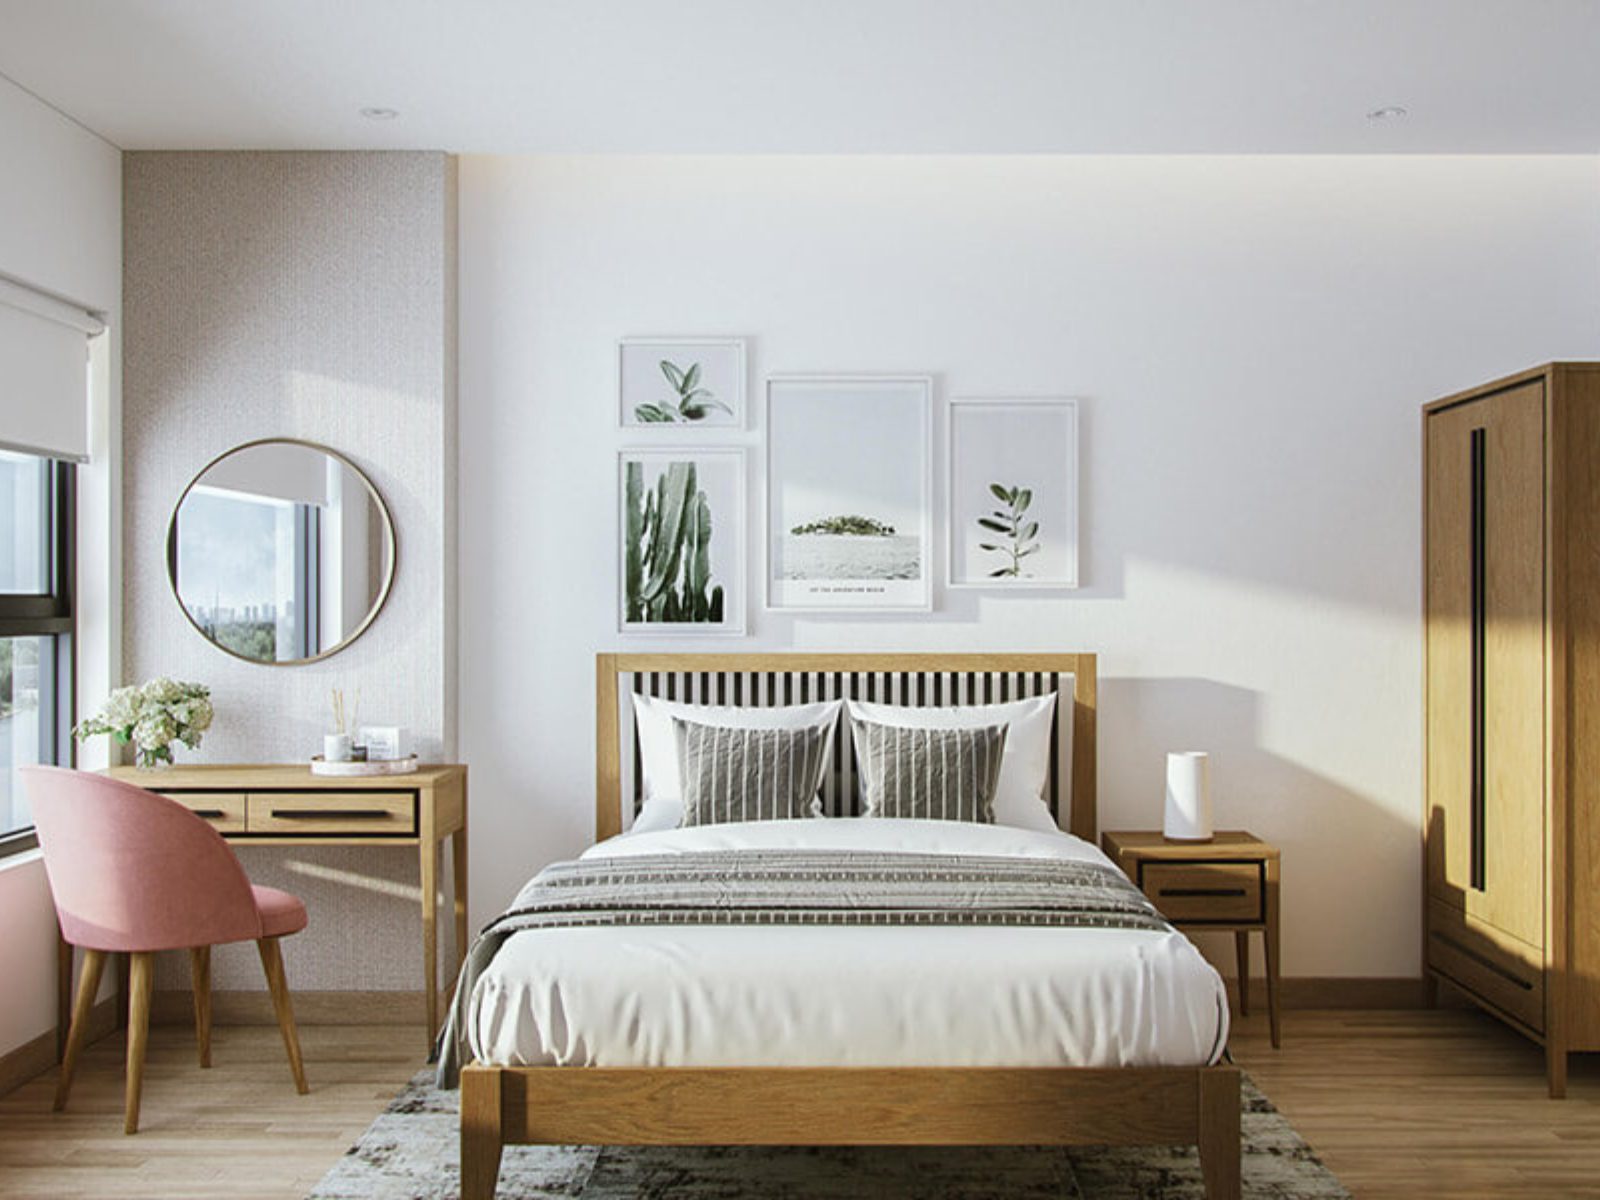 Phòng ngủ tường trắng đặc trưng của phong cách Scandinavian